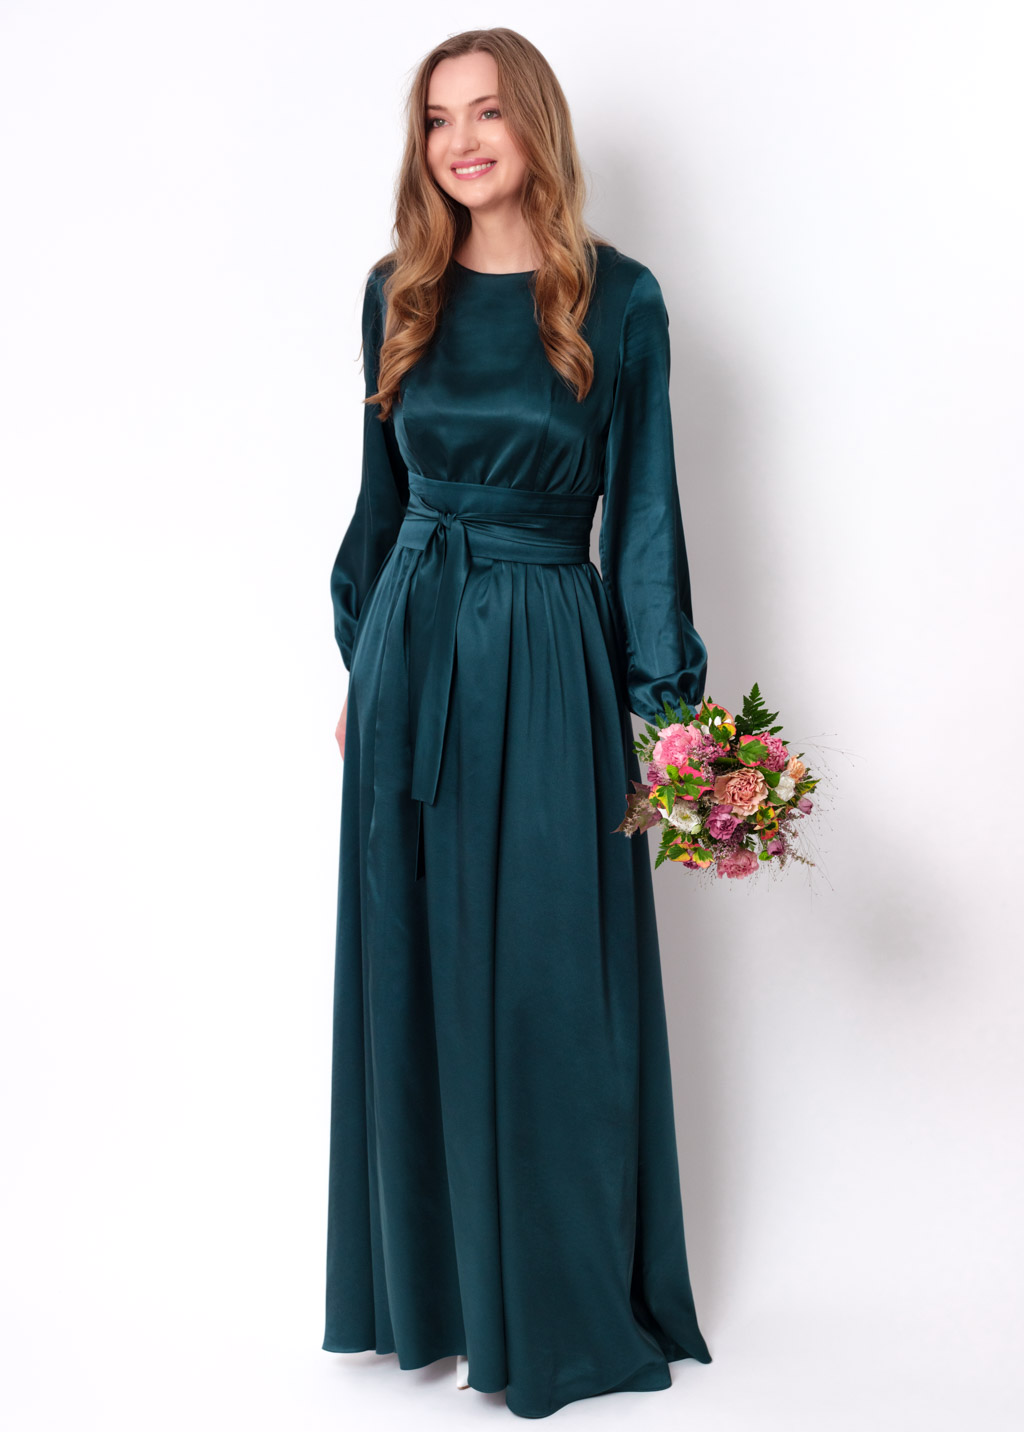 Dark teal green silk dress with belt, long slit dress, bridesmaid dress ...